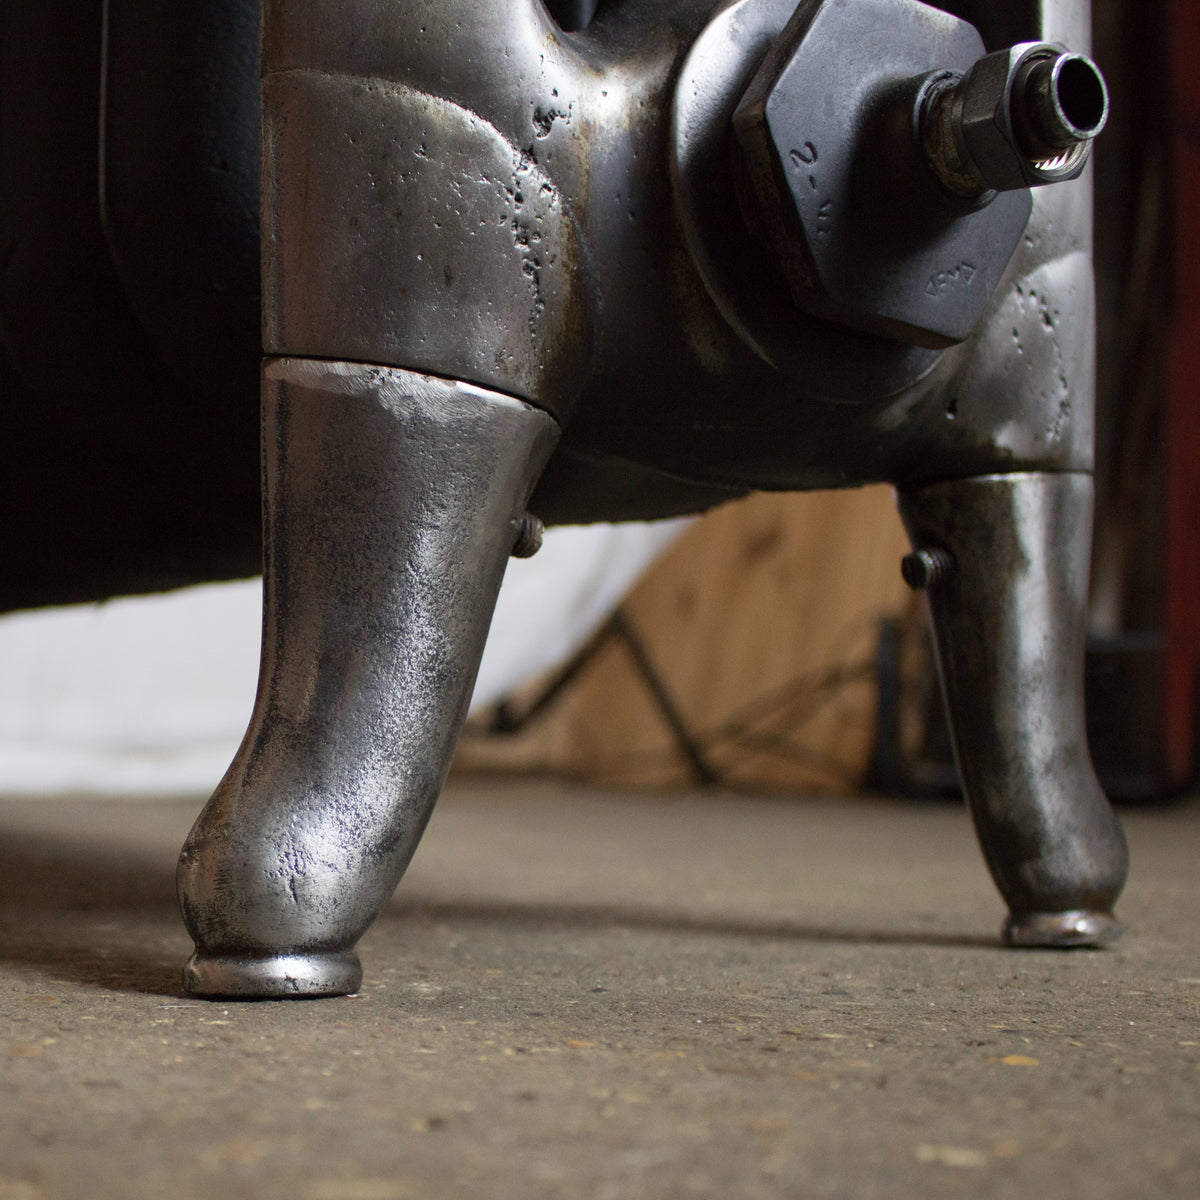 Antique Cast Iron Radiator | The Architectural Forum